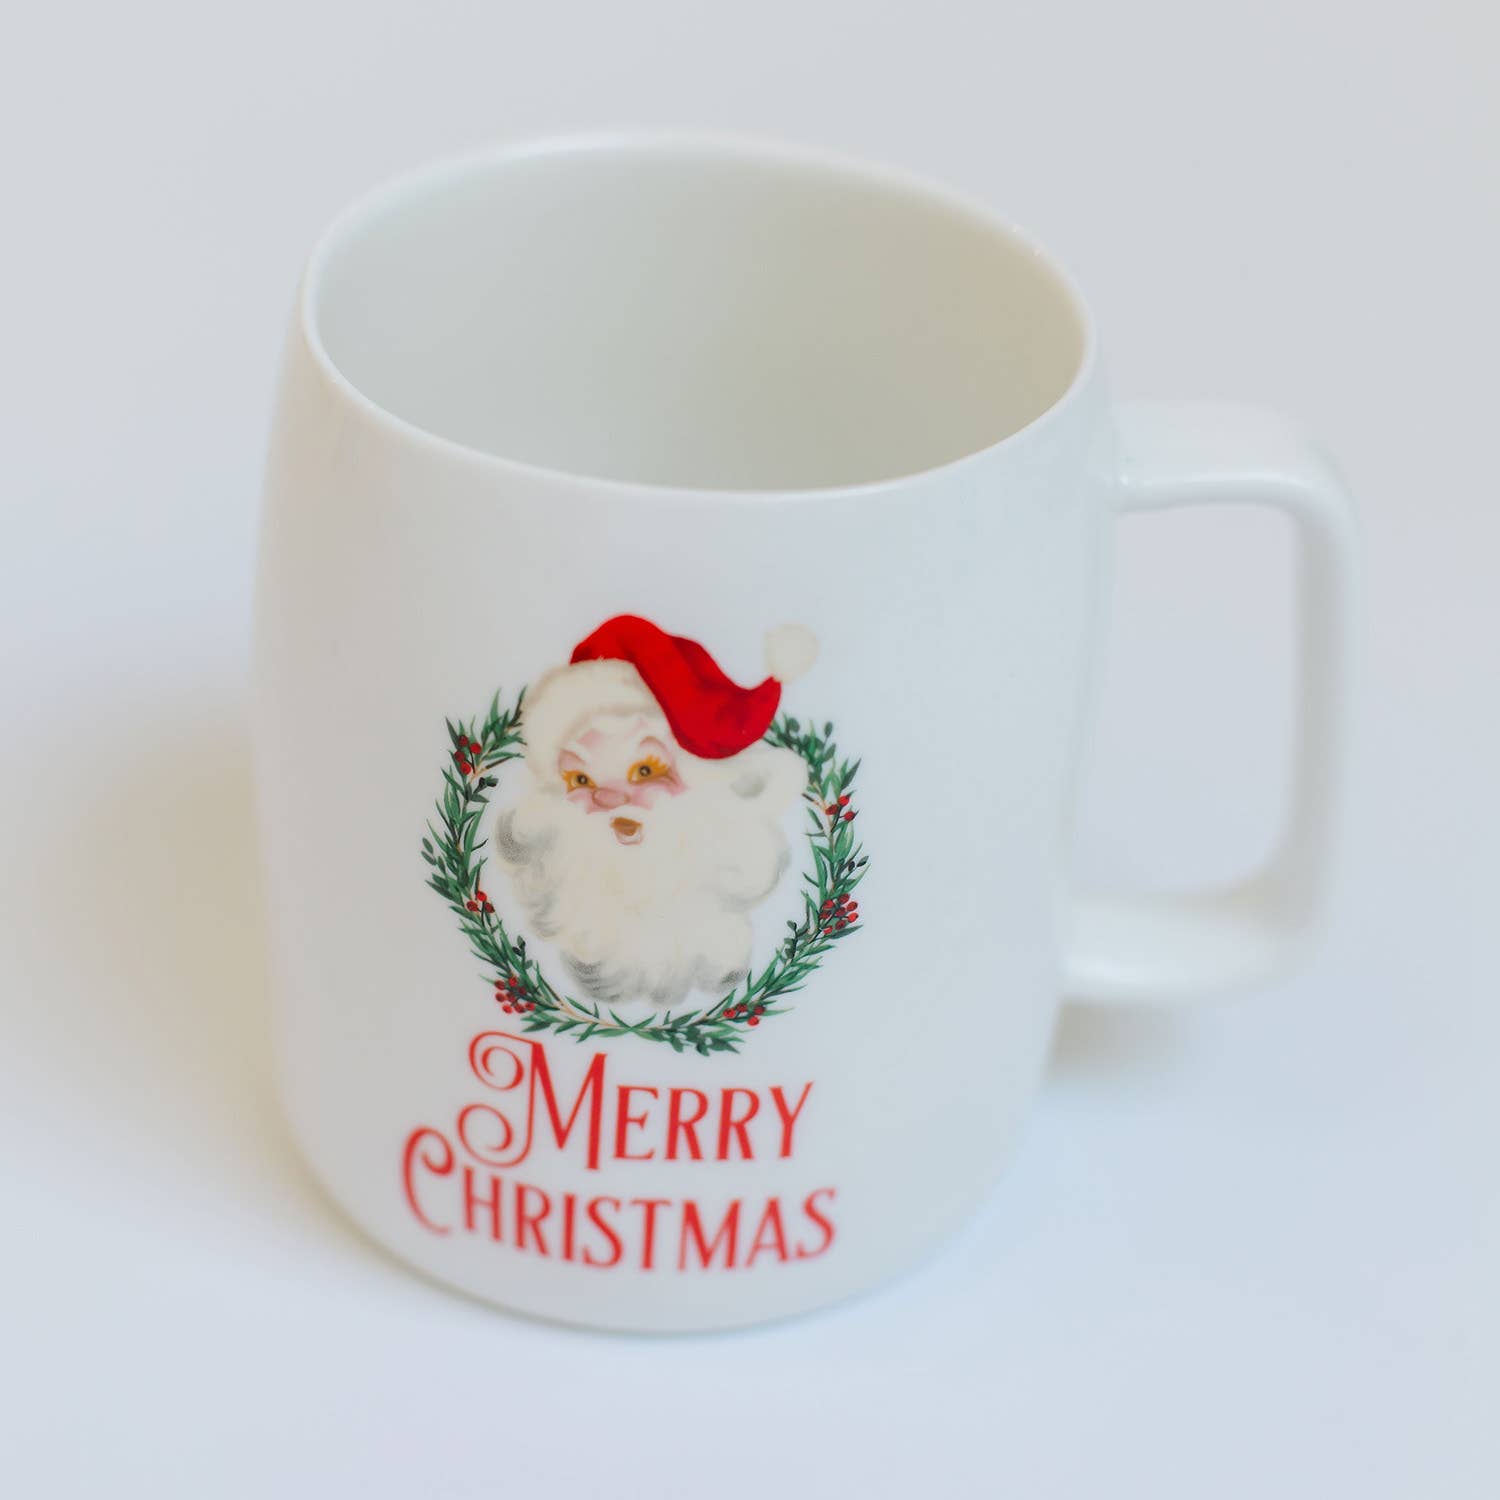 Merry Christmas ceramic mug